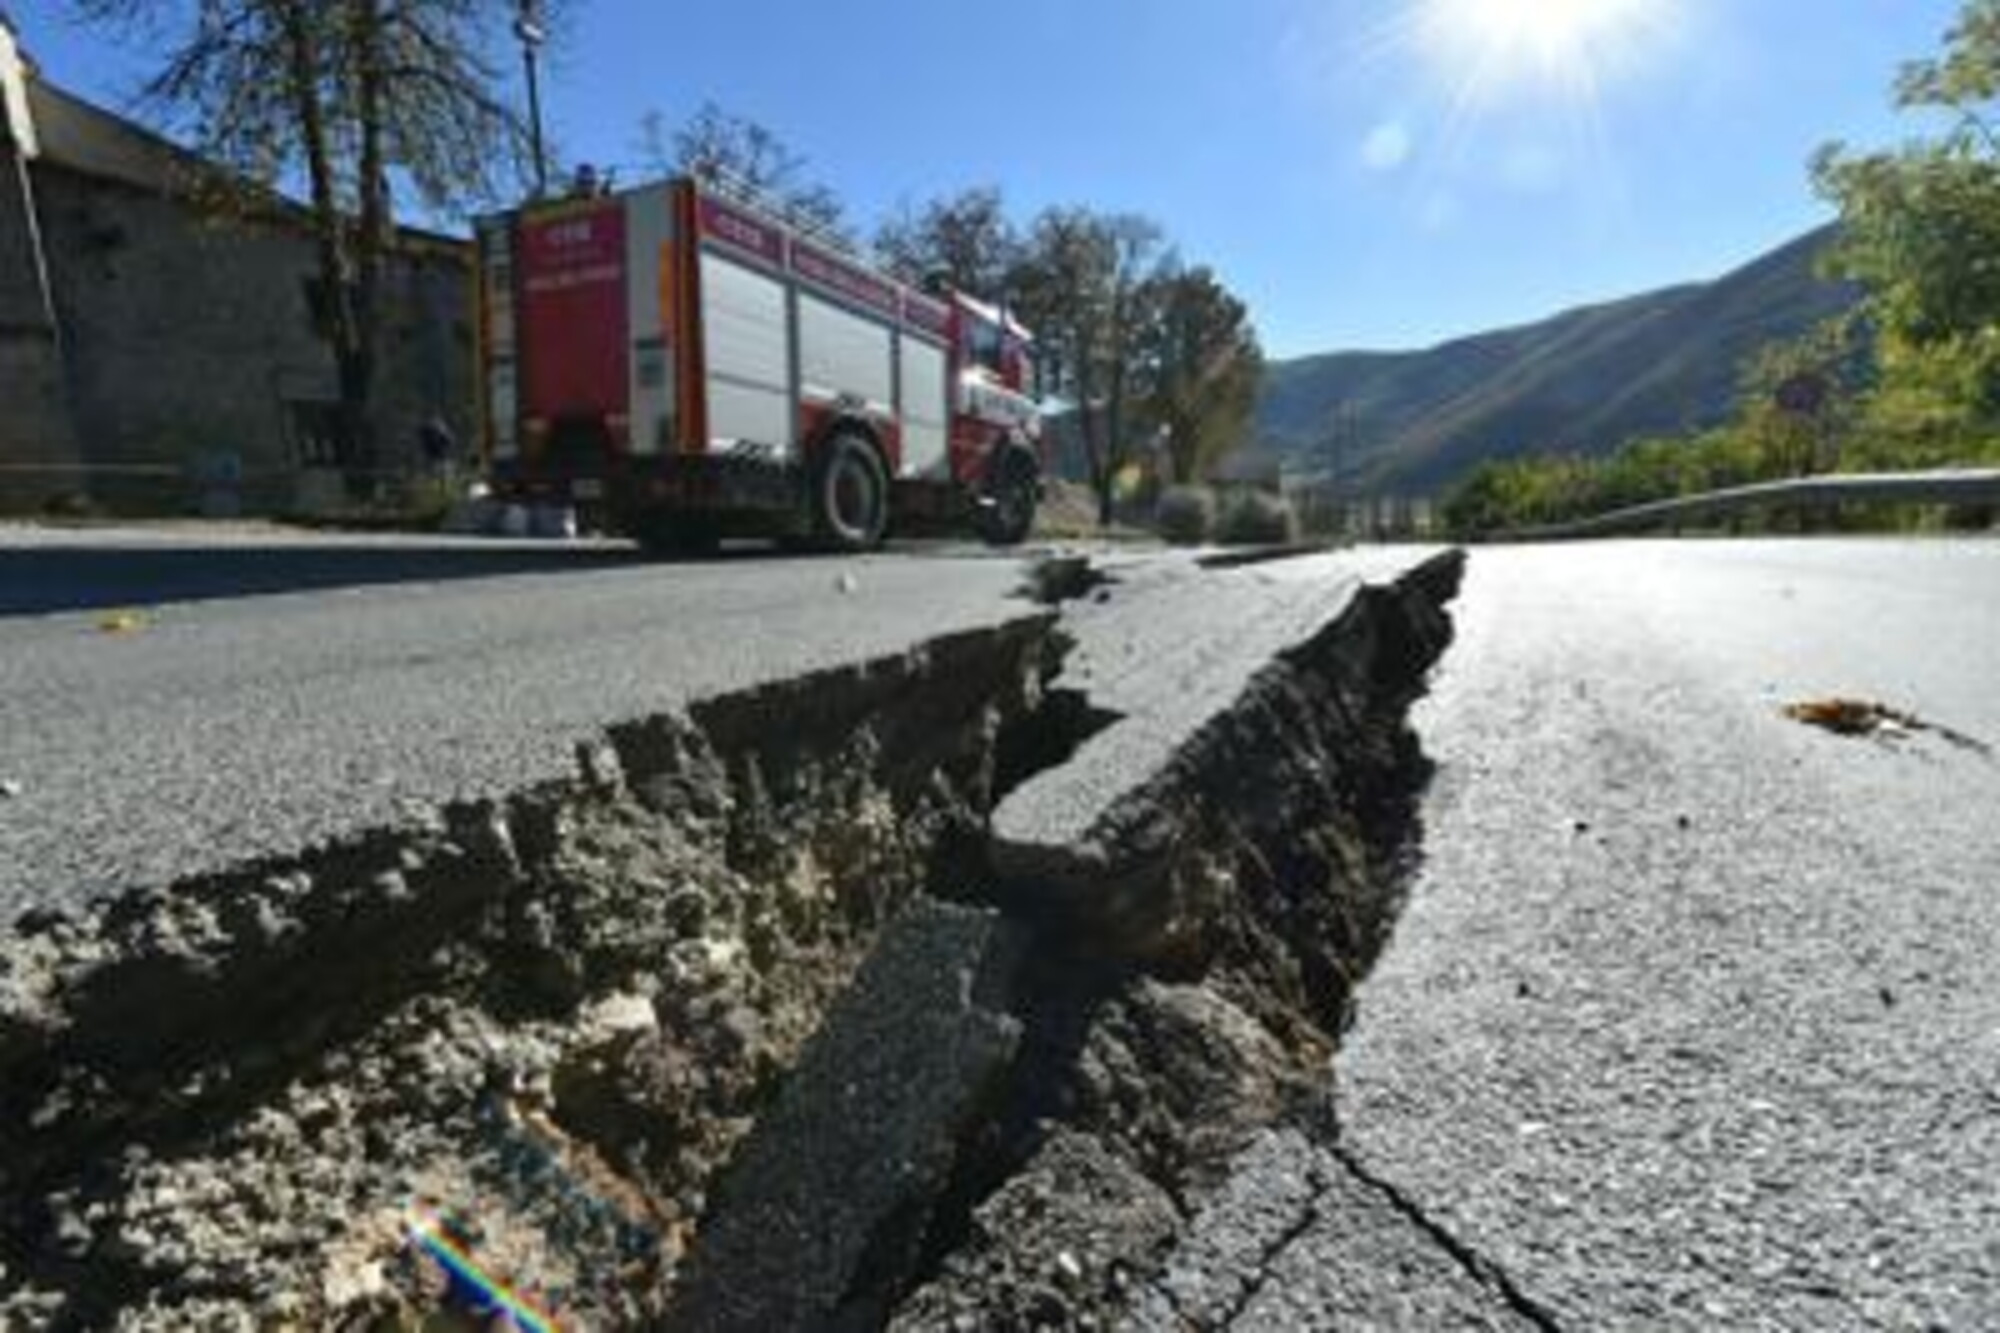 Milleproroghe emergenza sisma in area etnea prolungata